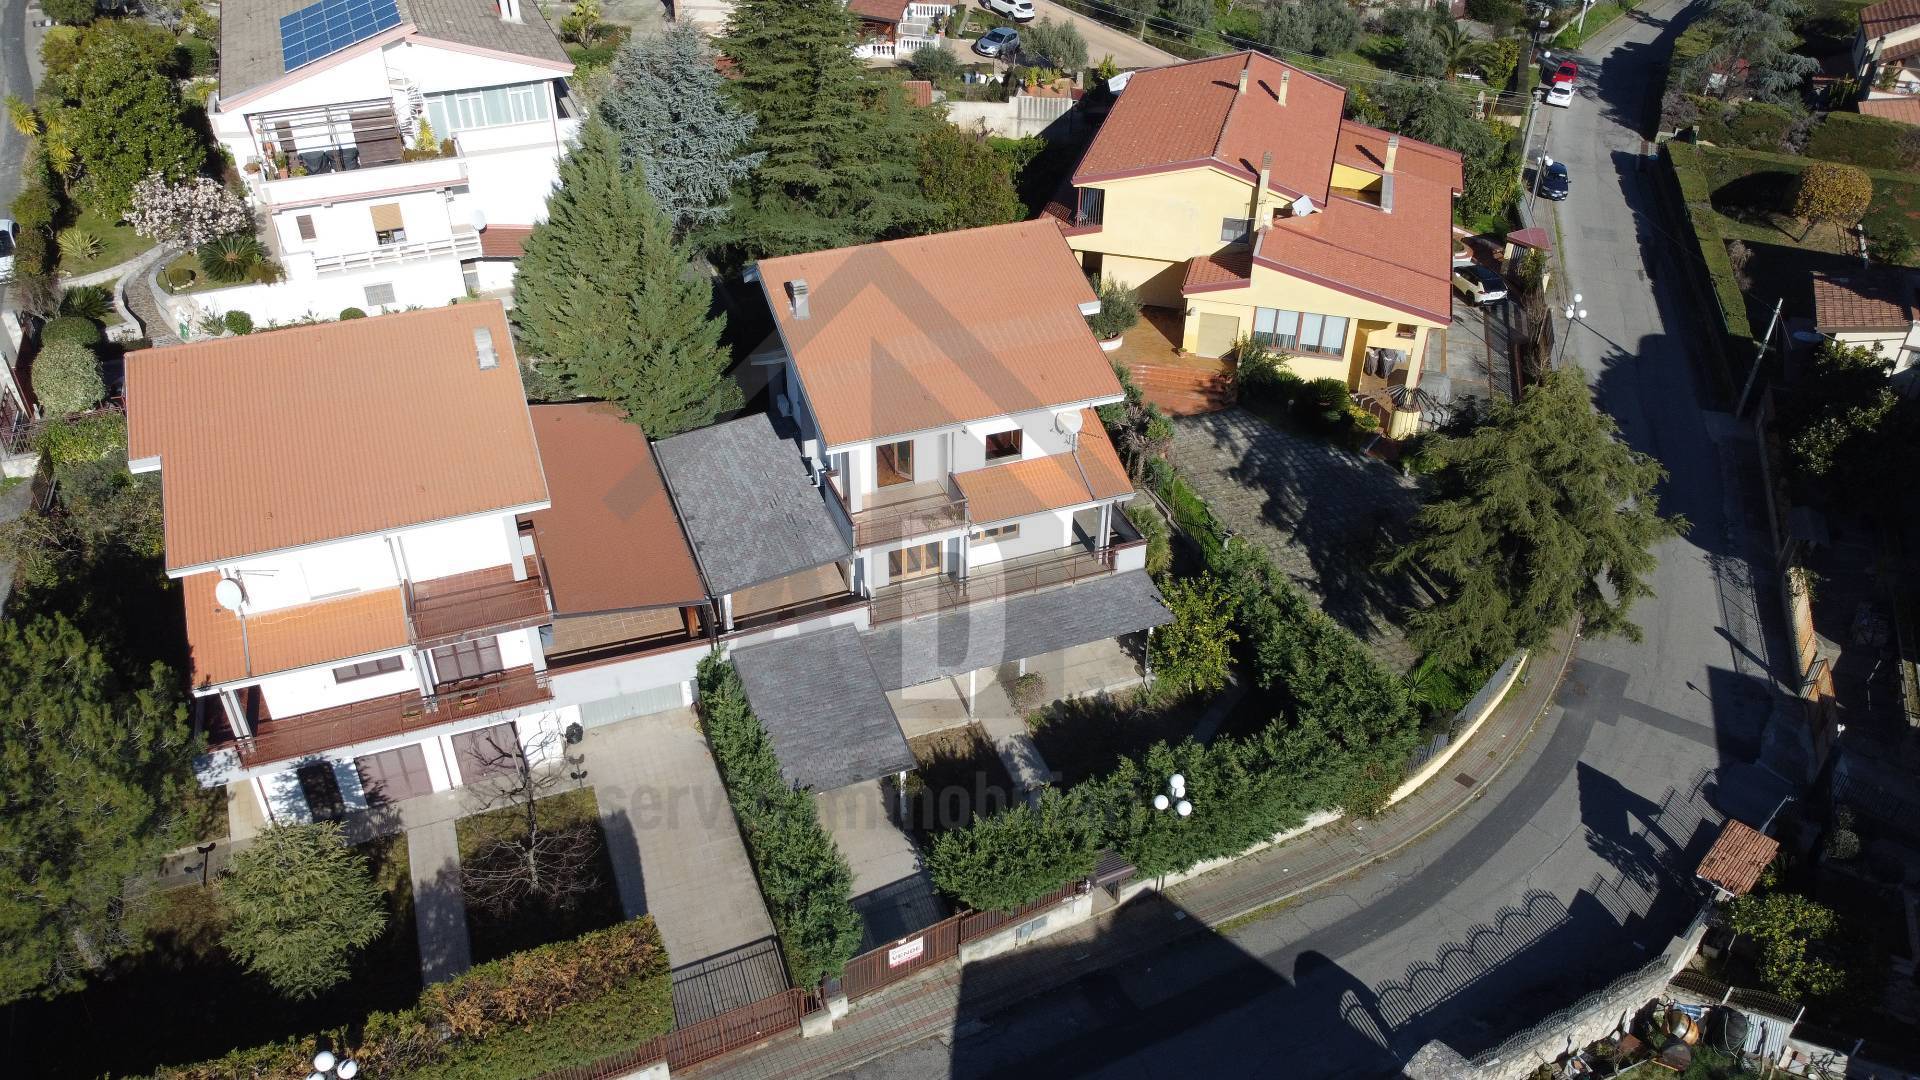 Villa in vendita Cosenza